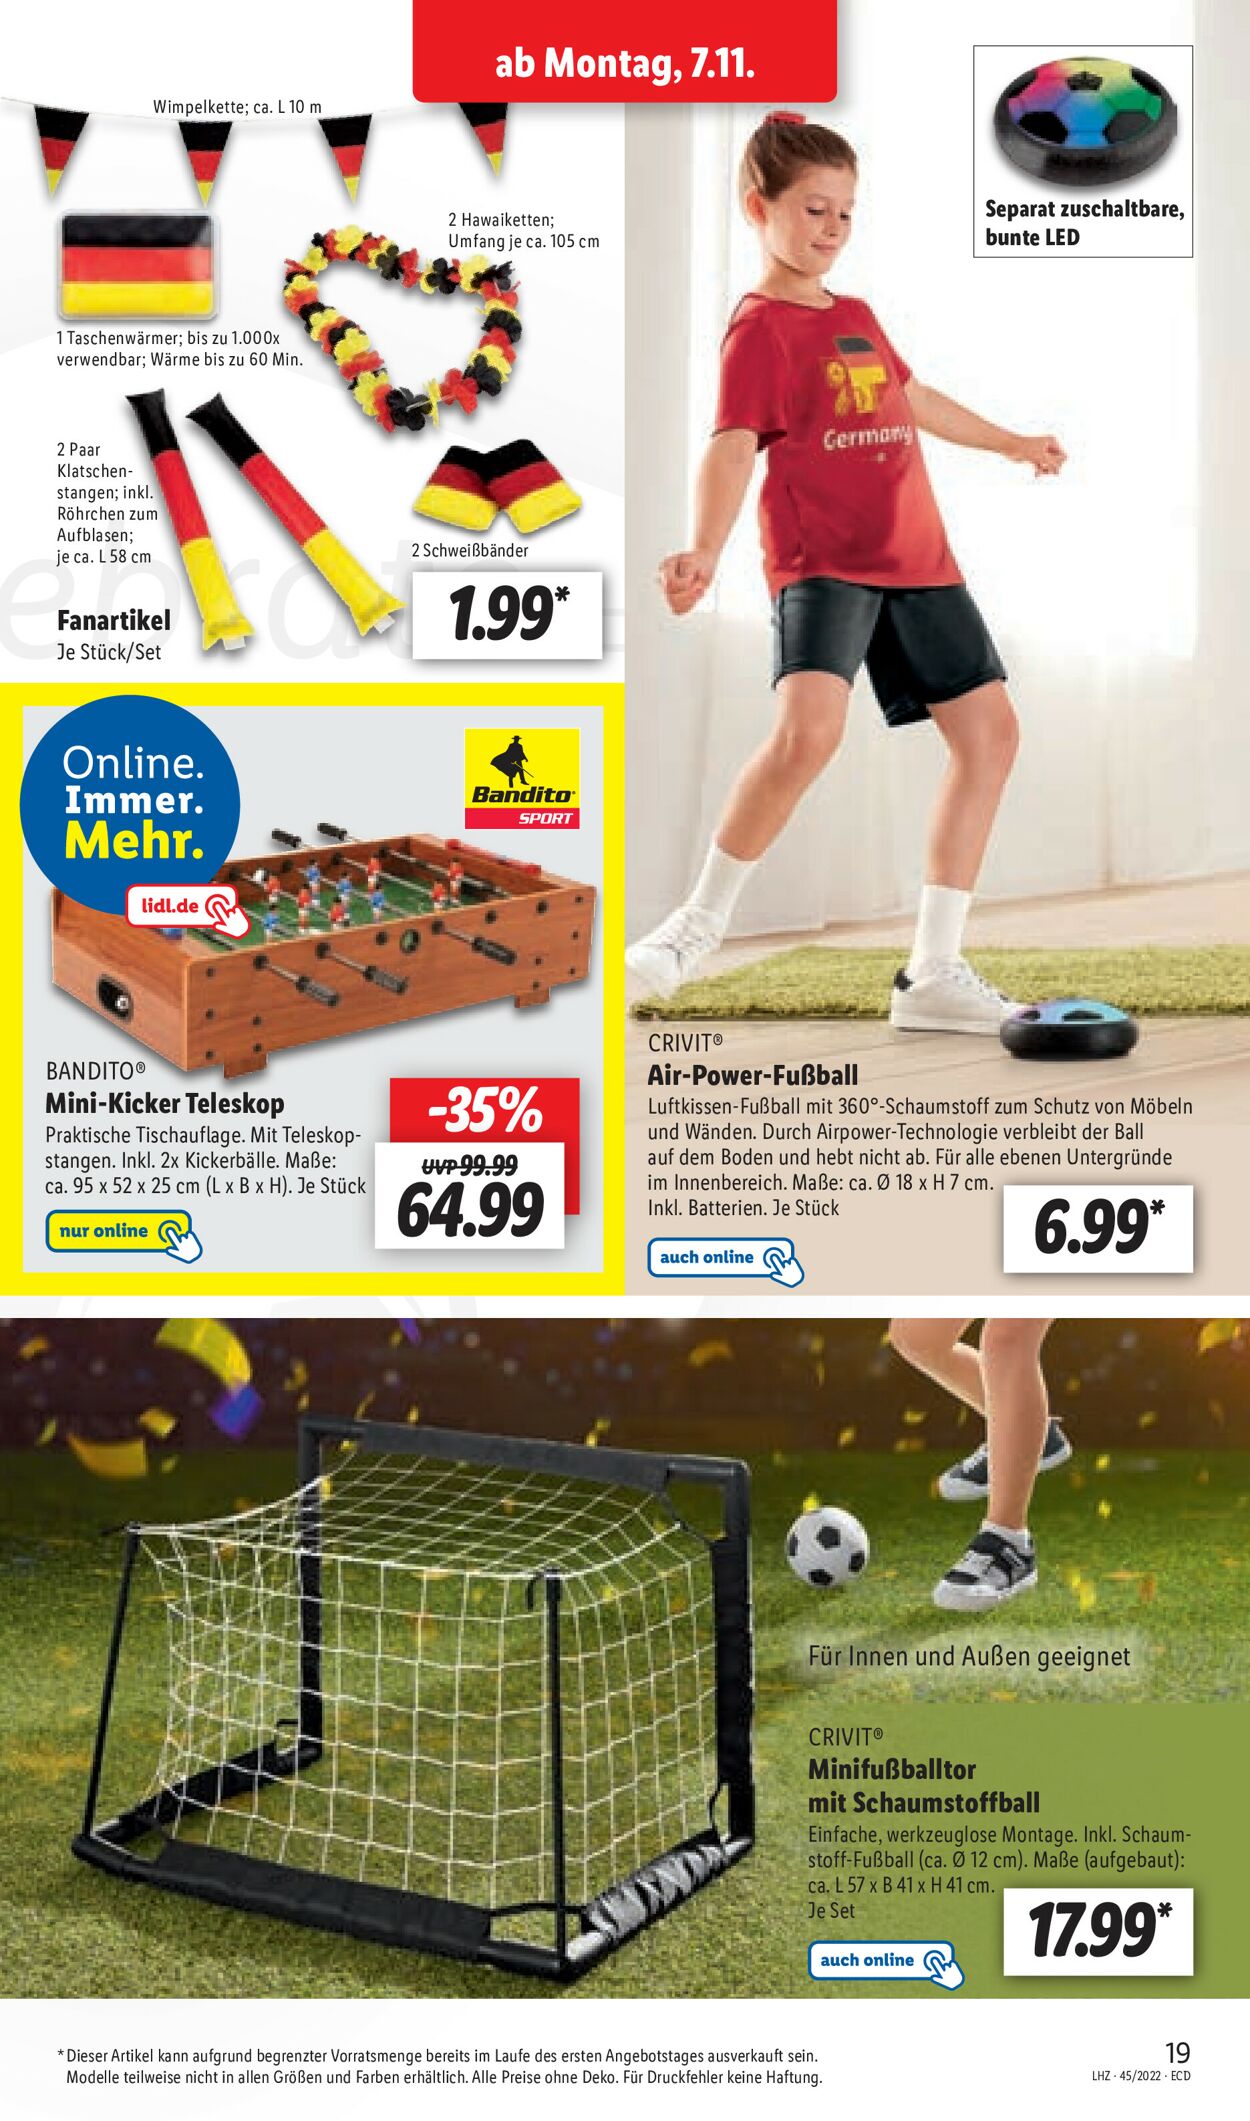 Air-power-fussball Angebot bei Lidl